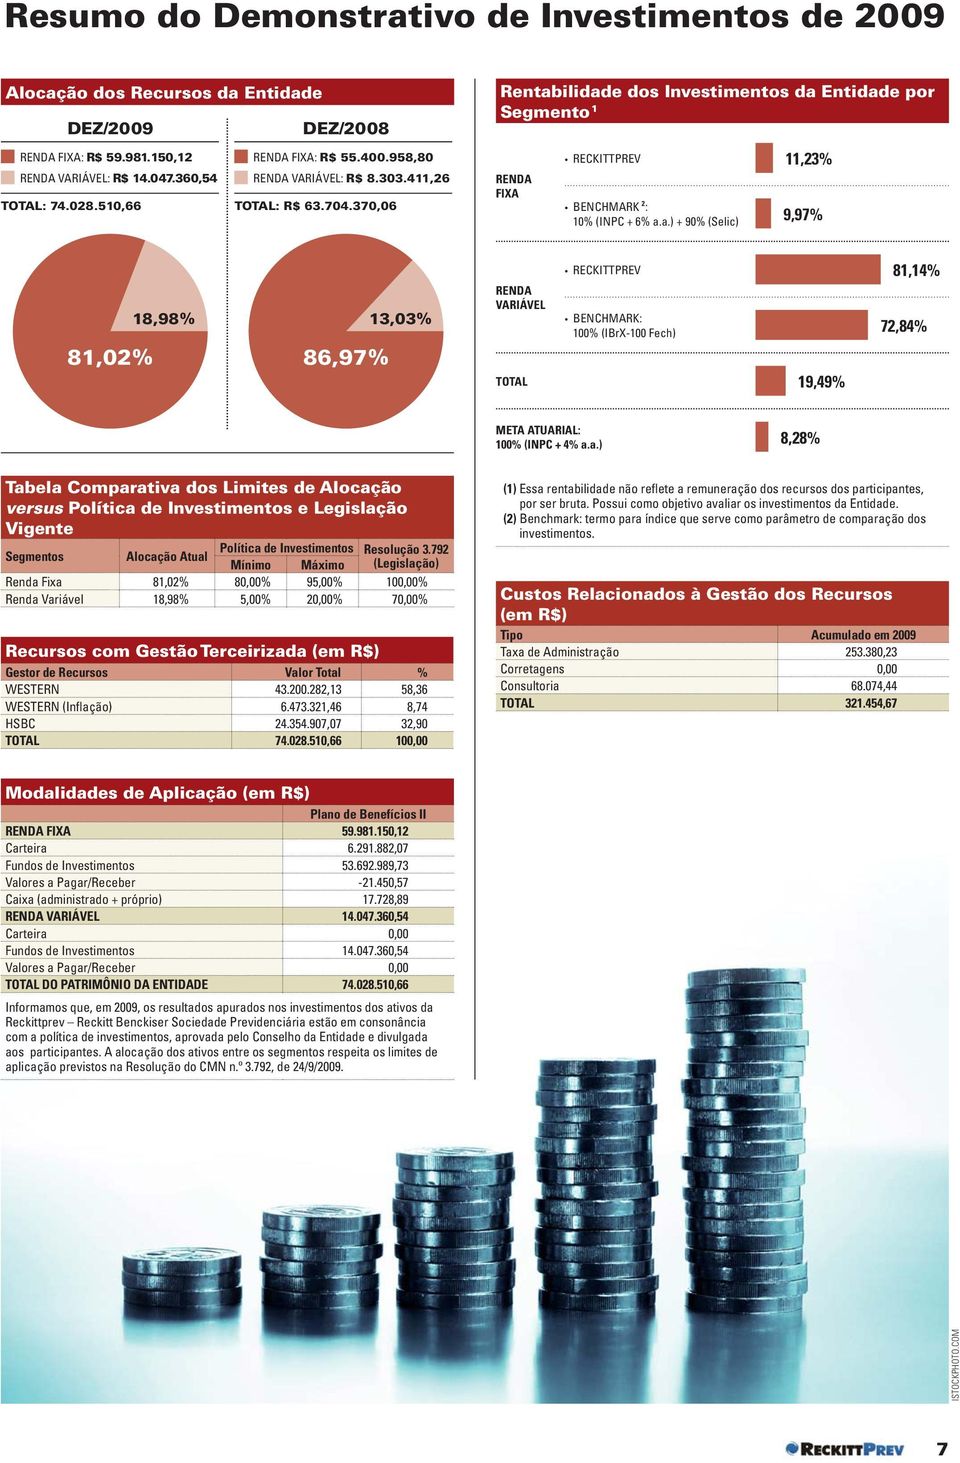 ilidade dos Investimentos da Entidade por Segmento 1 RENDA FIXA RECKITTPREV BENCHMARK 2 : 10% (INPC + 6% a.a.) + 90% (Selic) 11,23% 9,97% 81,02% 18,98% 86,97% 13,03% RENDA VARIÁVEL TOTAL RECKITTPREV BENCHMARK: 100% (IBrX-100 Fech) 19,49% 81,14% 72,84% META ATUARIAL: 100% (INPC + 4% a.